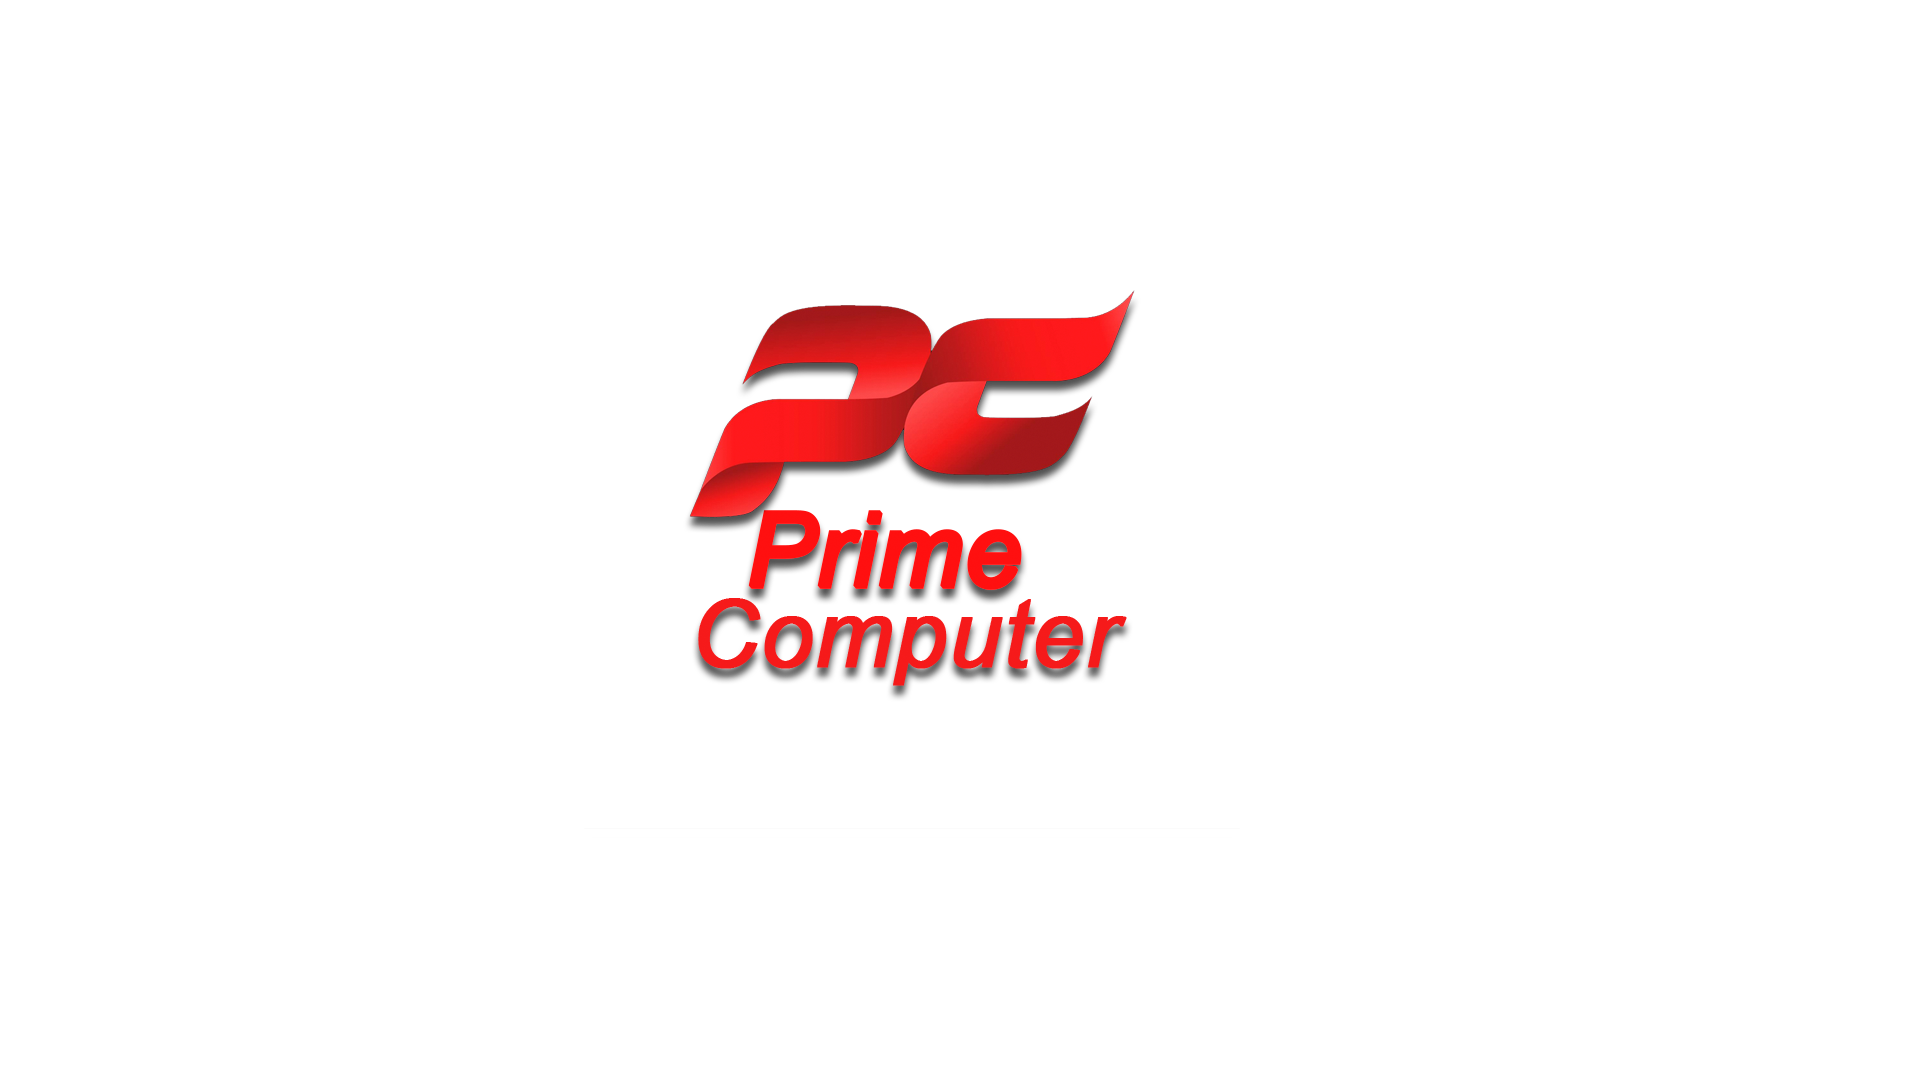 Prime Computer